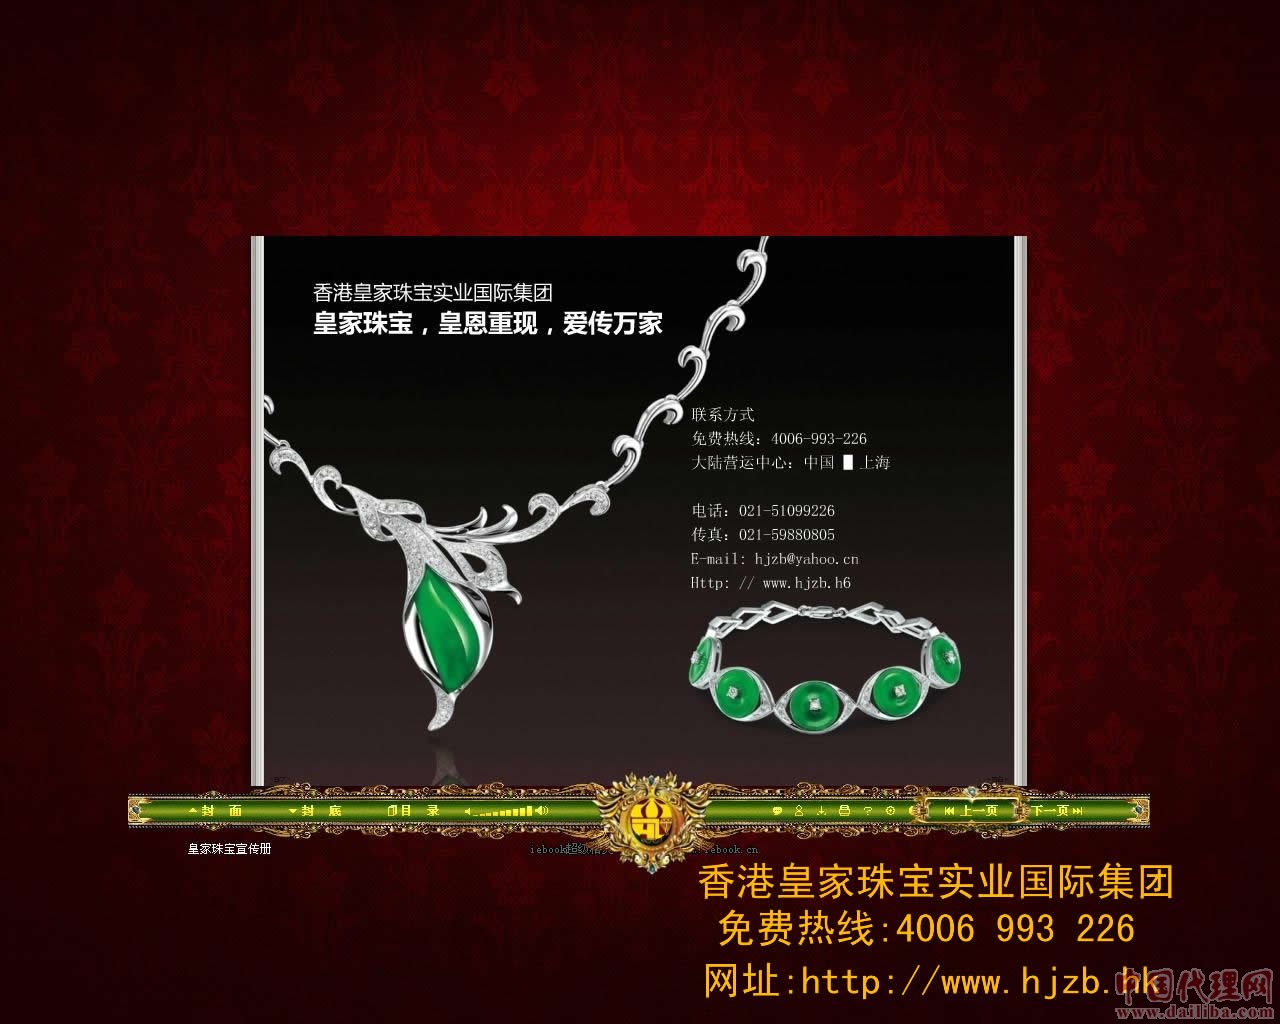 香港皇家珠宝现面向全国各大城市诚征代理